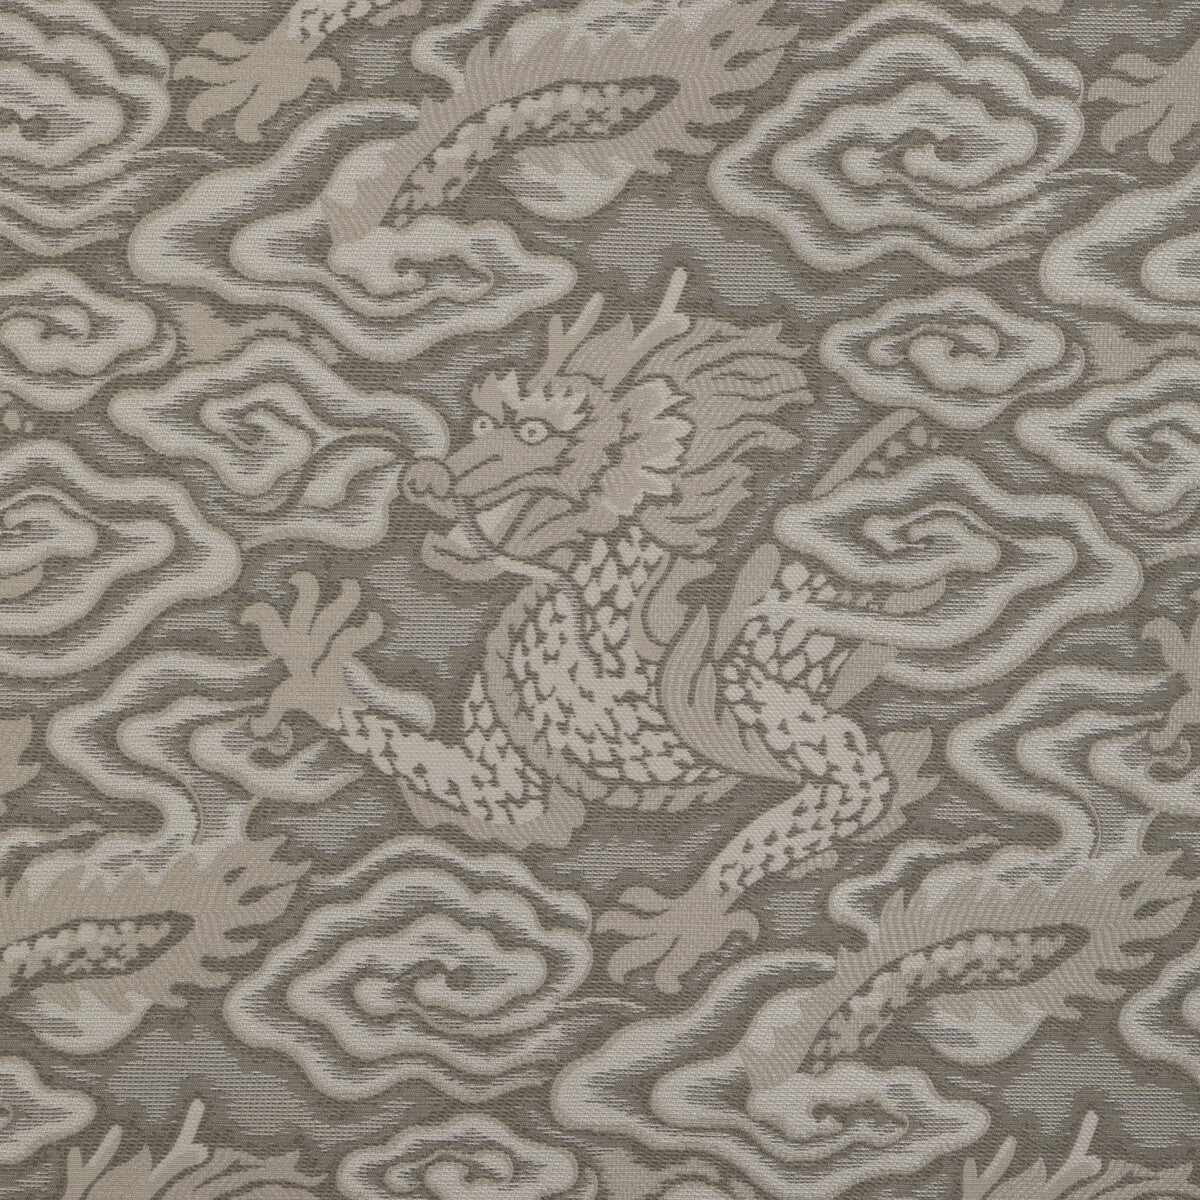 Kravet Design fabric in 36977-1101 color - pattern 36977.1101.0 - by Kravet Design